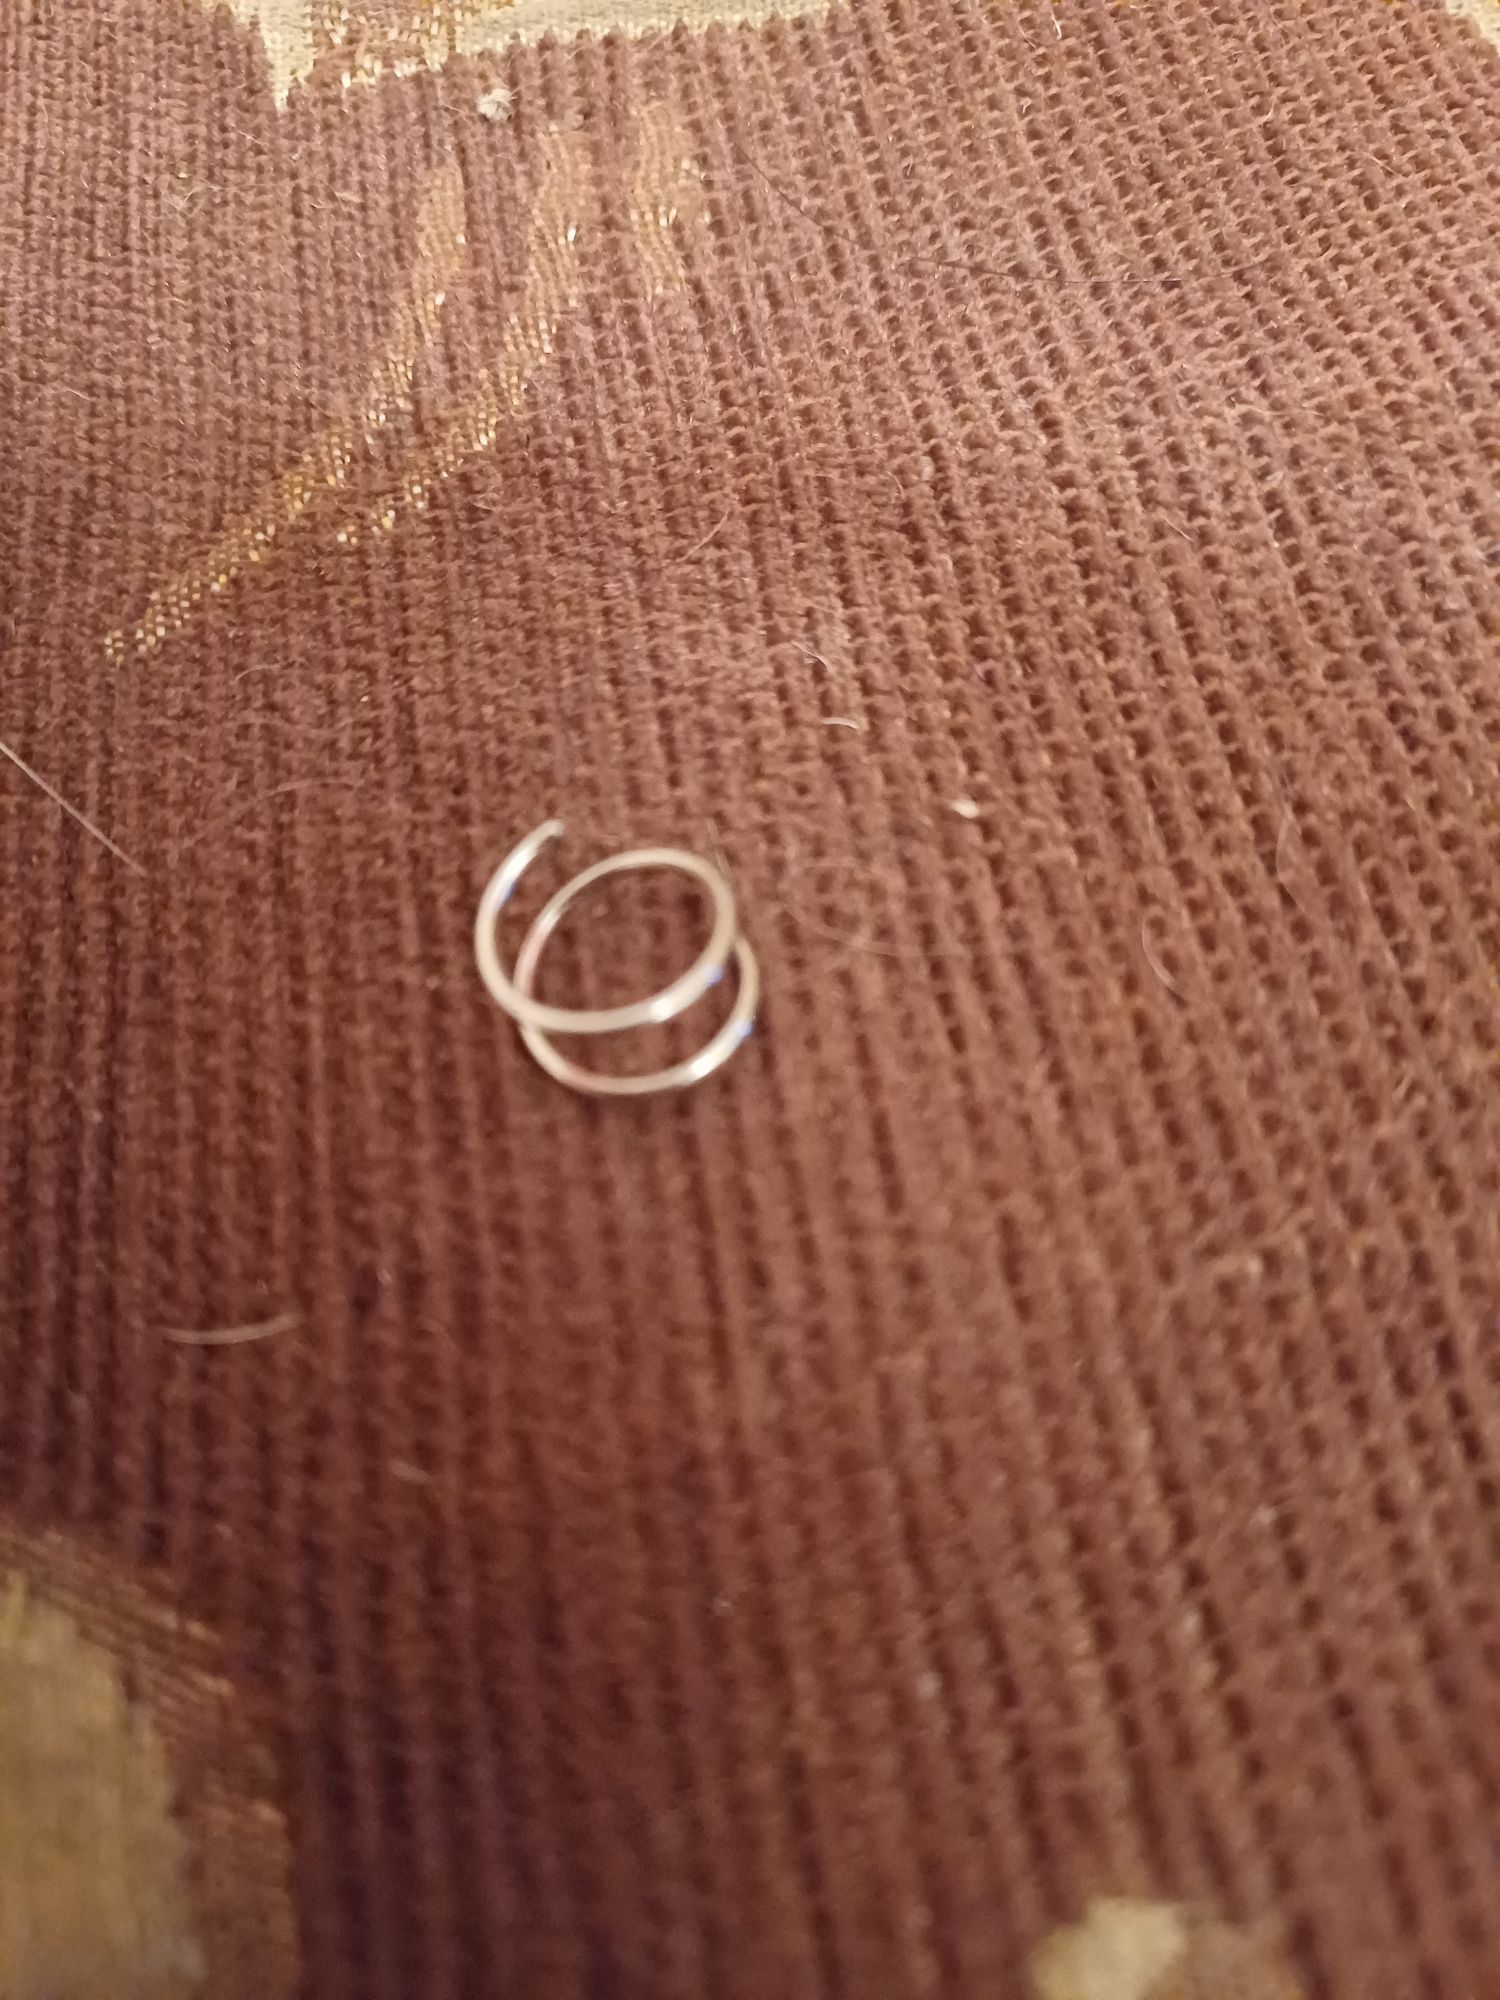 Пирсинг серьги лабрет спираль штанги закрутки кольцо для пупка пер